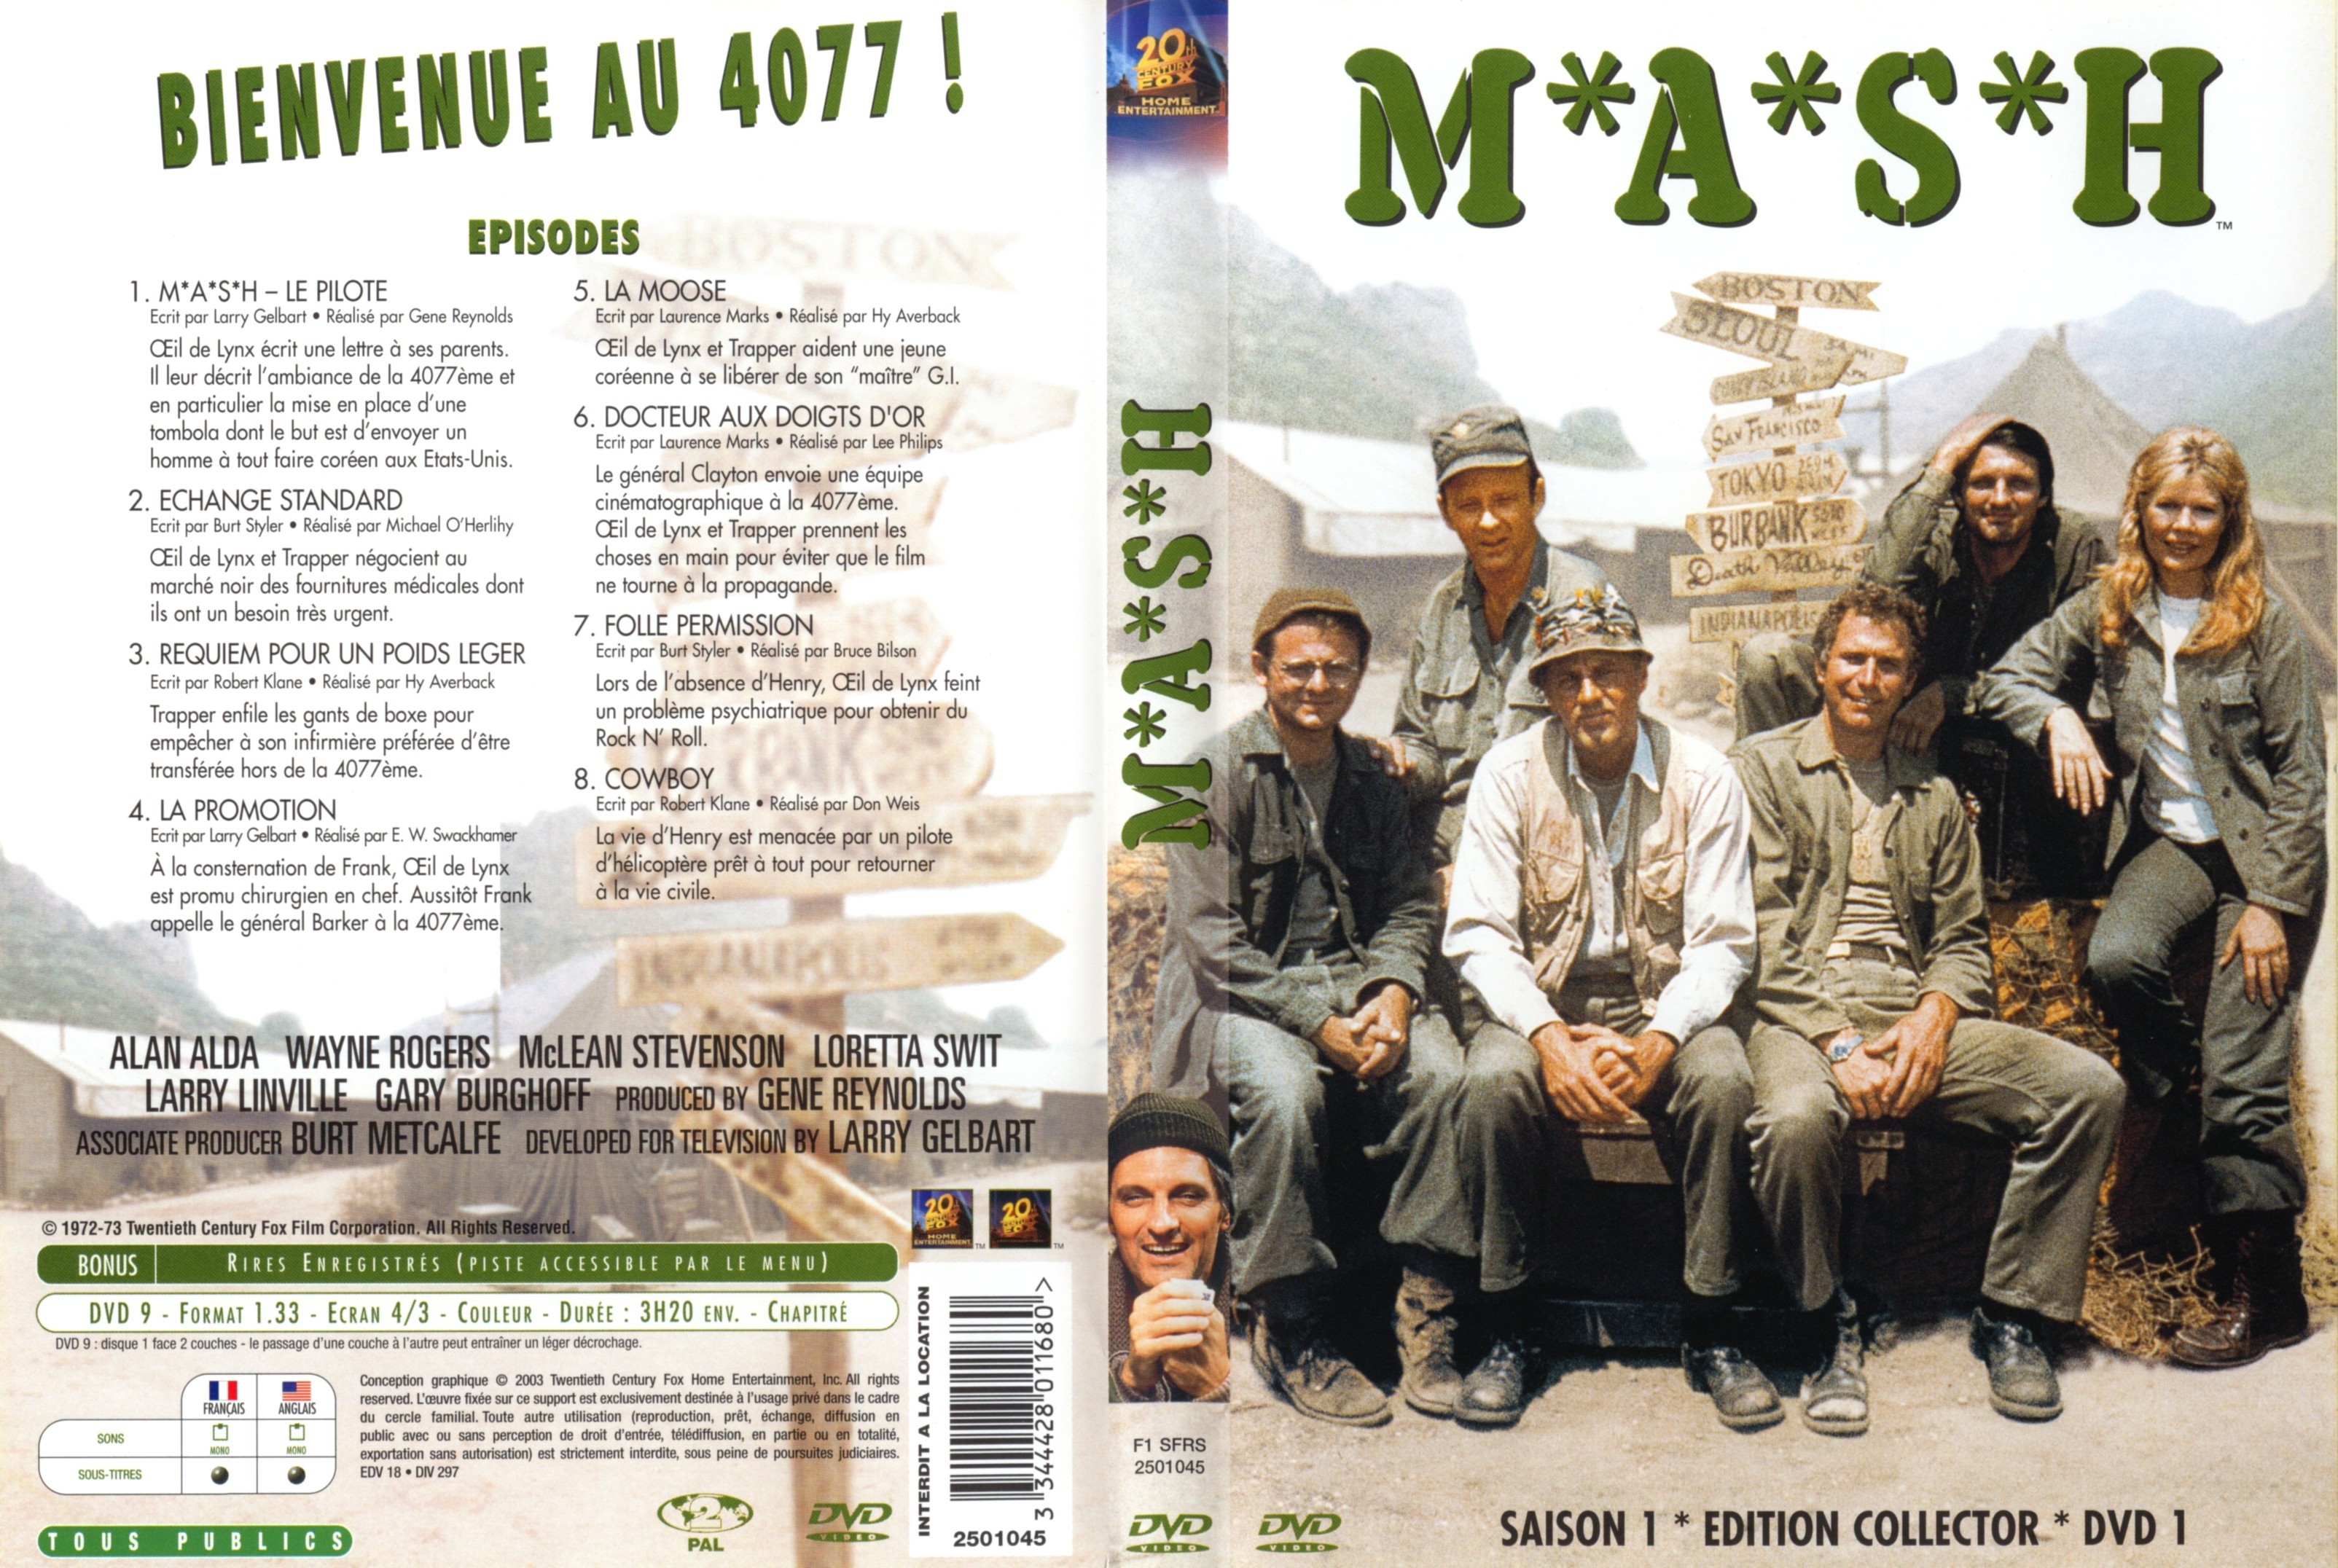 Jaquette DVD MASH Saison 1 DVD 1